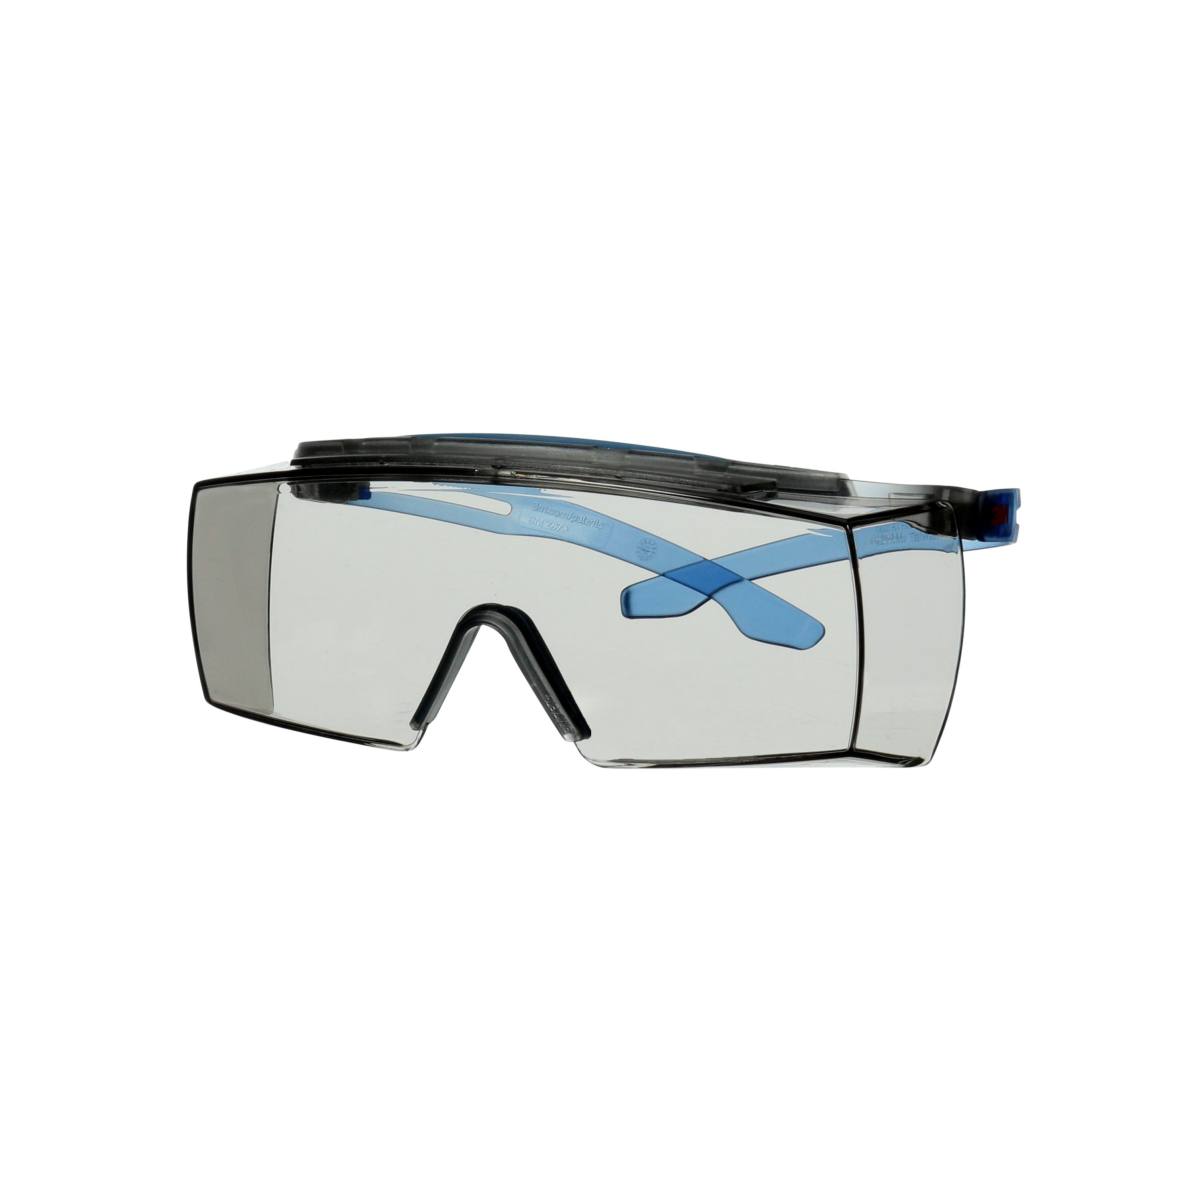 3M SecureFit 3700 Überbrille, blaue Bügel, integrierter Augenbrauenschutz, Scotchgard Anti-Beschlag Beschichtung (K&N), graue Scheibe für Innen-/Außenbereich, SF3707XSGAF-BLU-EU